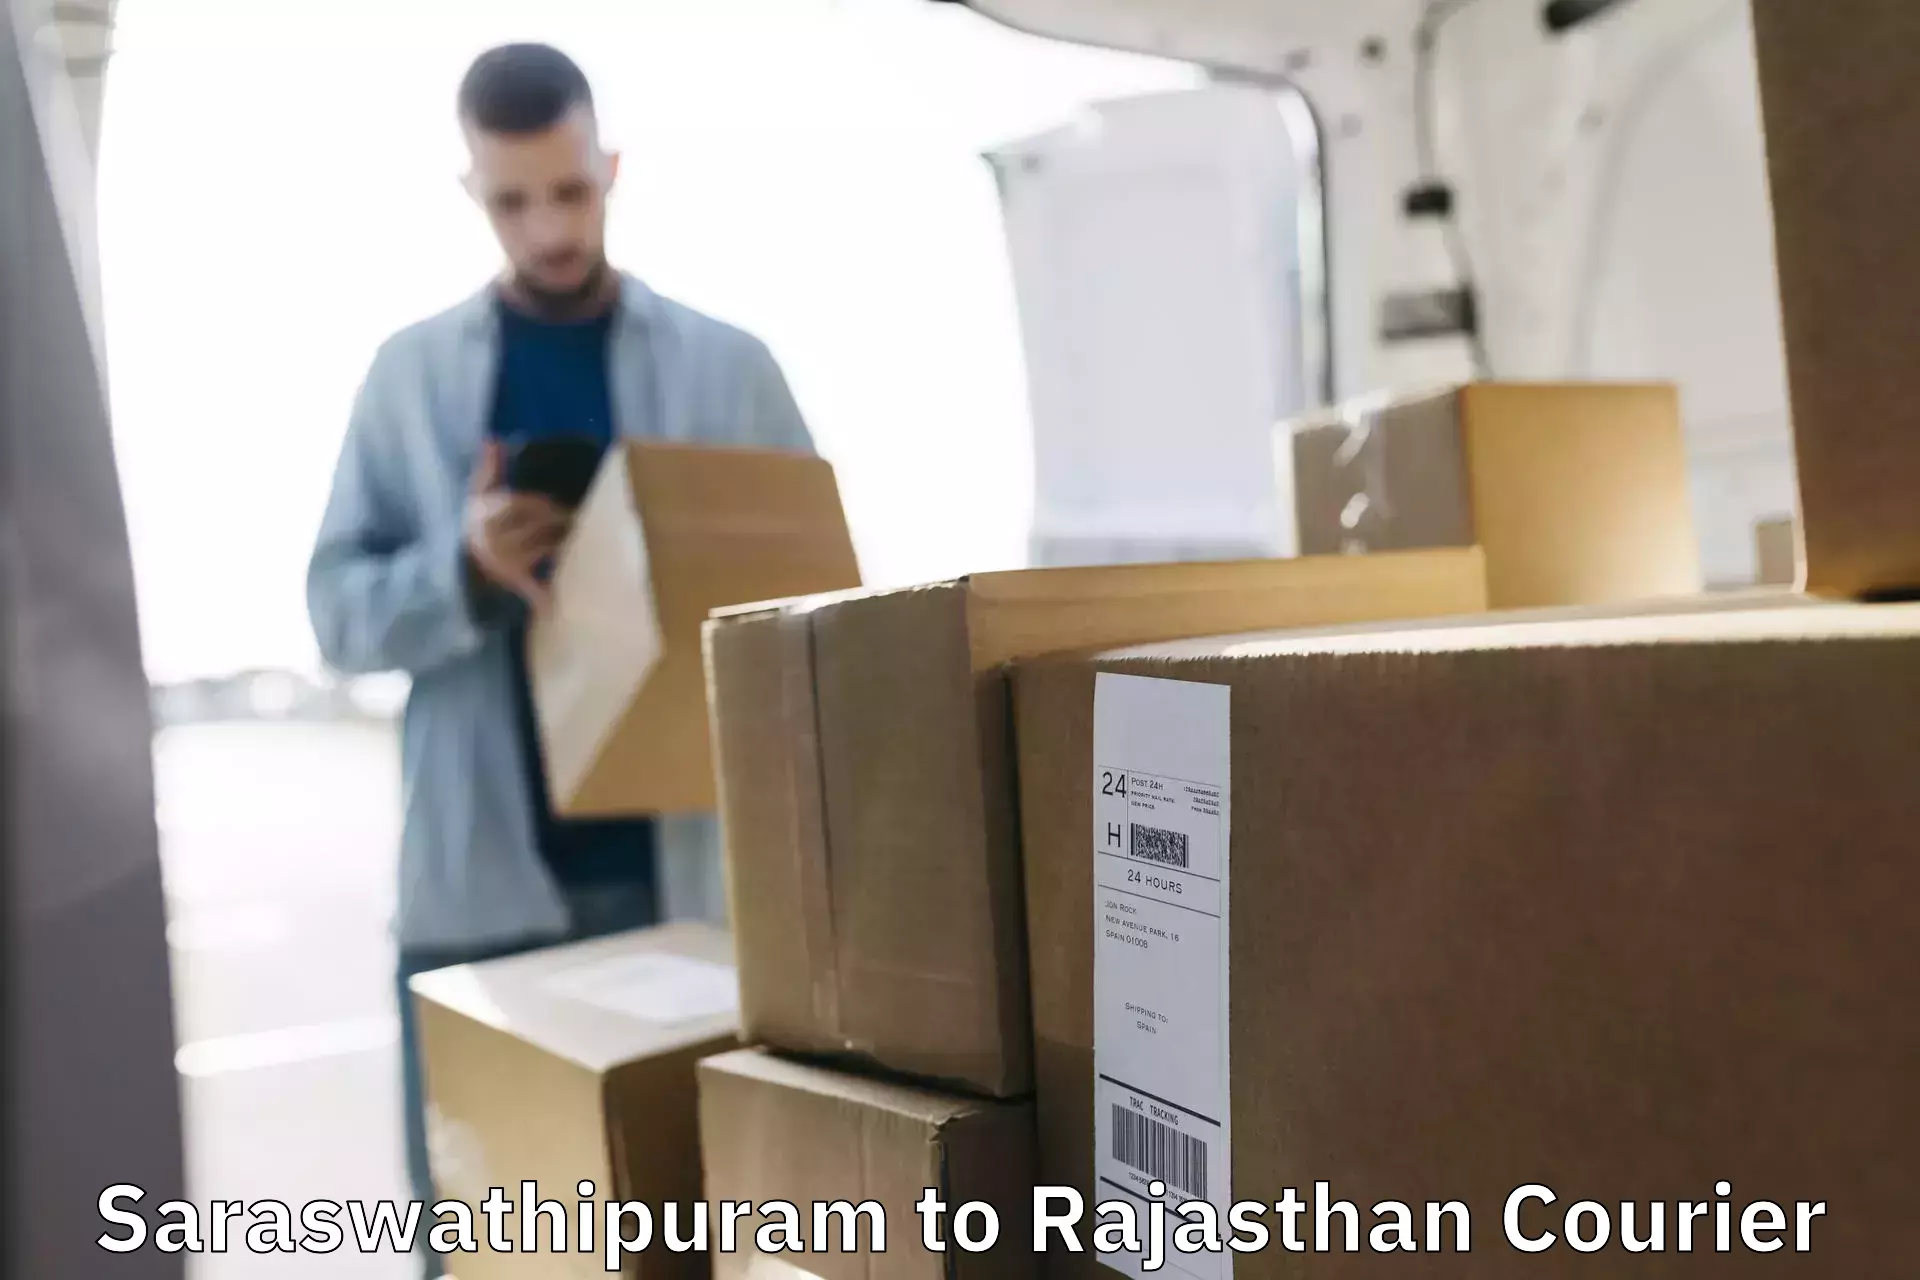 Courier service partnerships Saraswathipuram to Sri Ganganagar